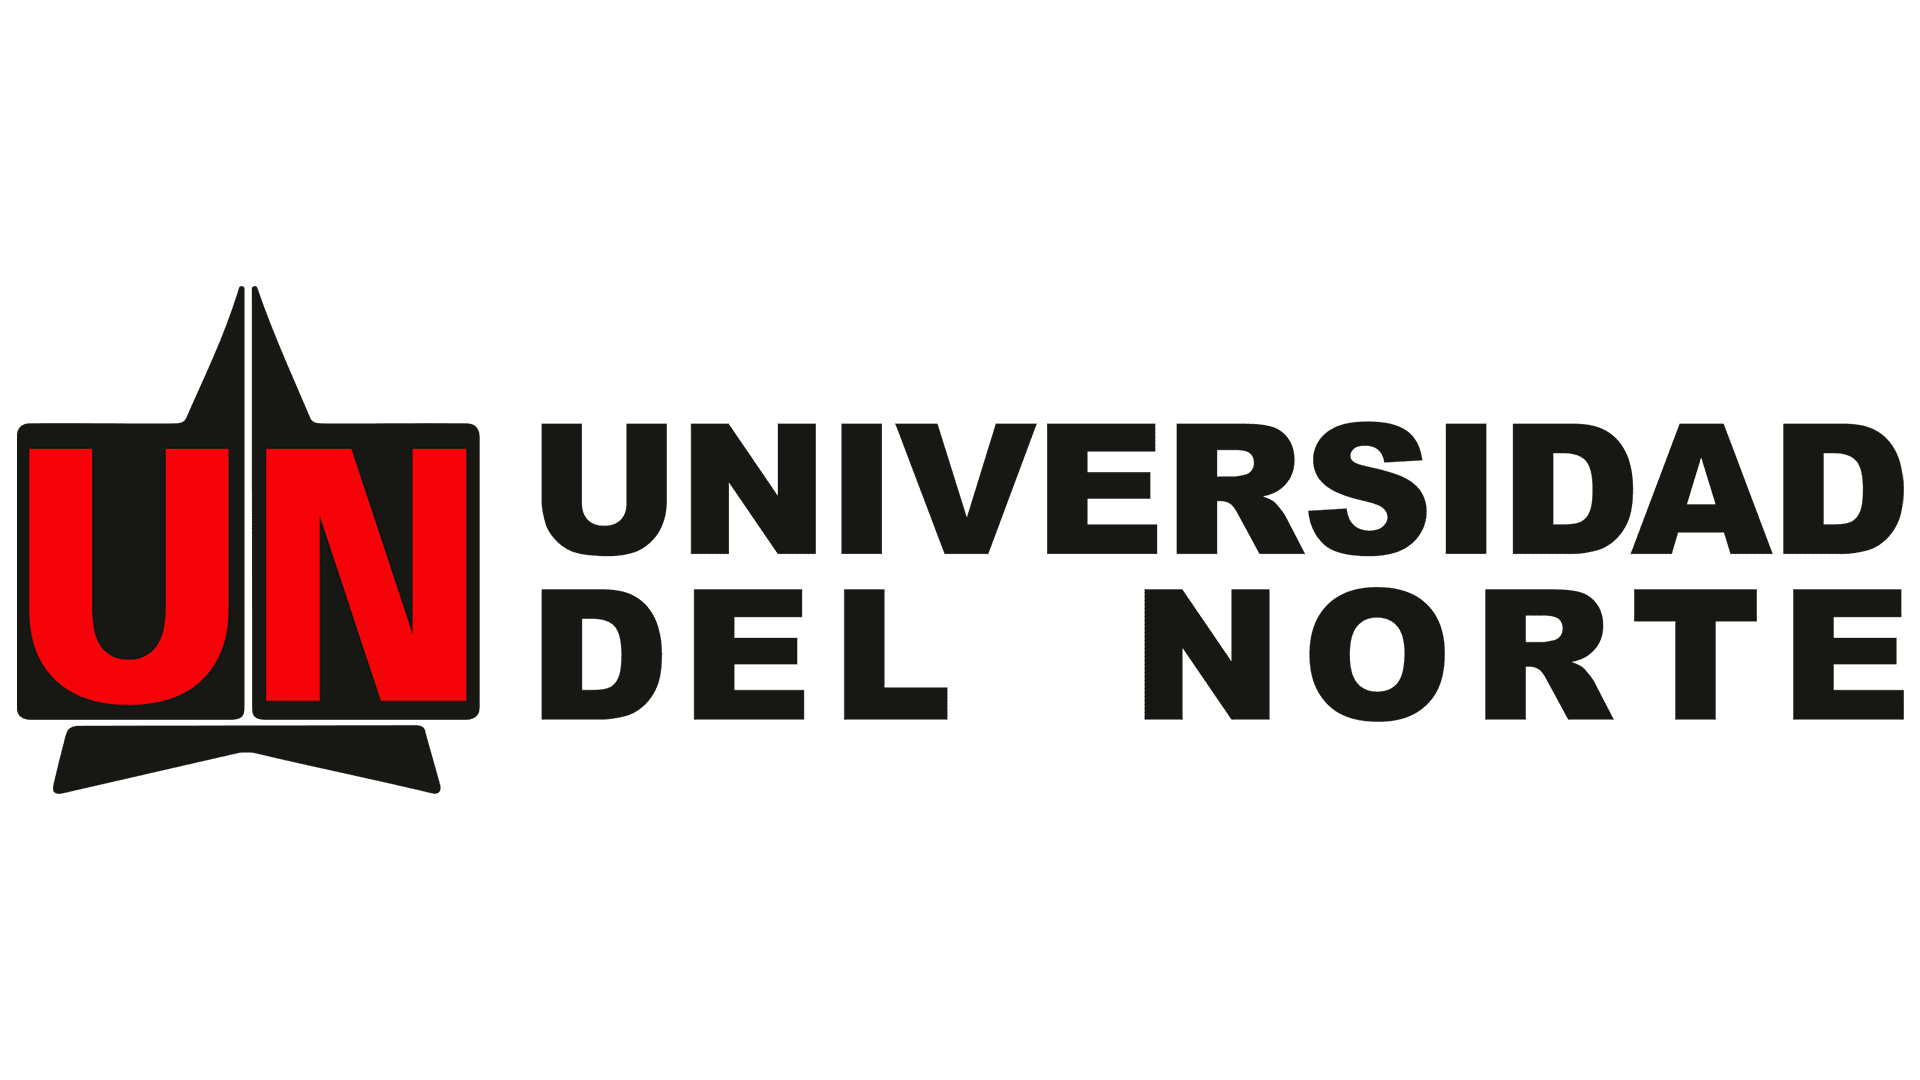 Universidad del Norte's logo